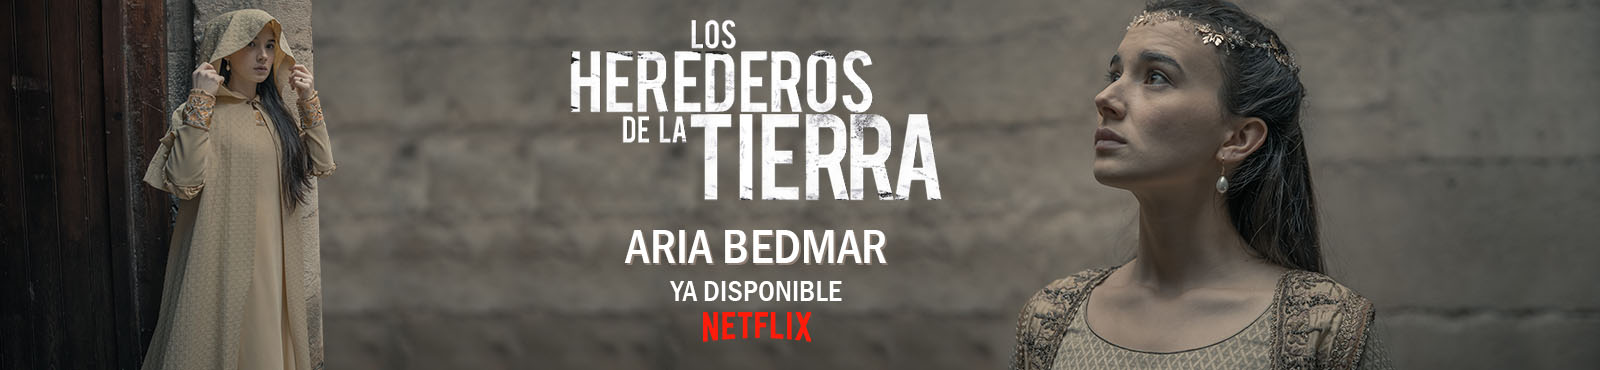 Aria Bedmar estrena "Los herederos de la tierra"